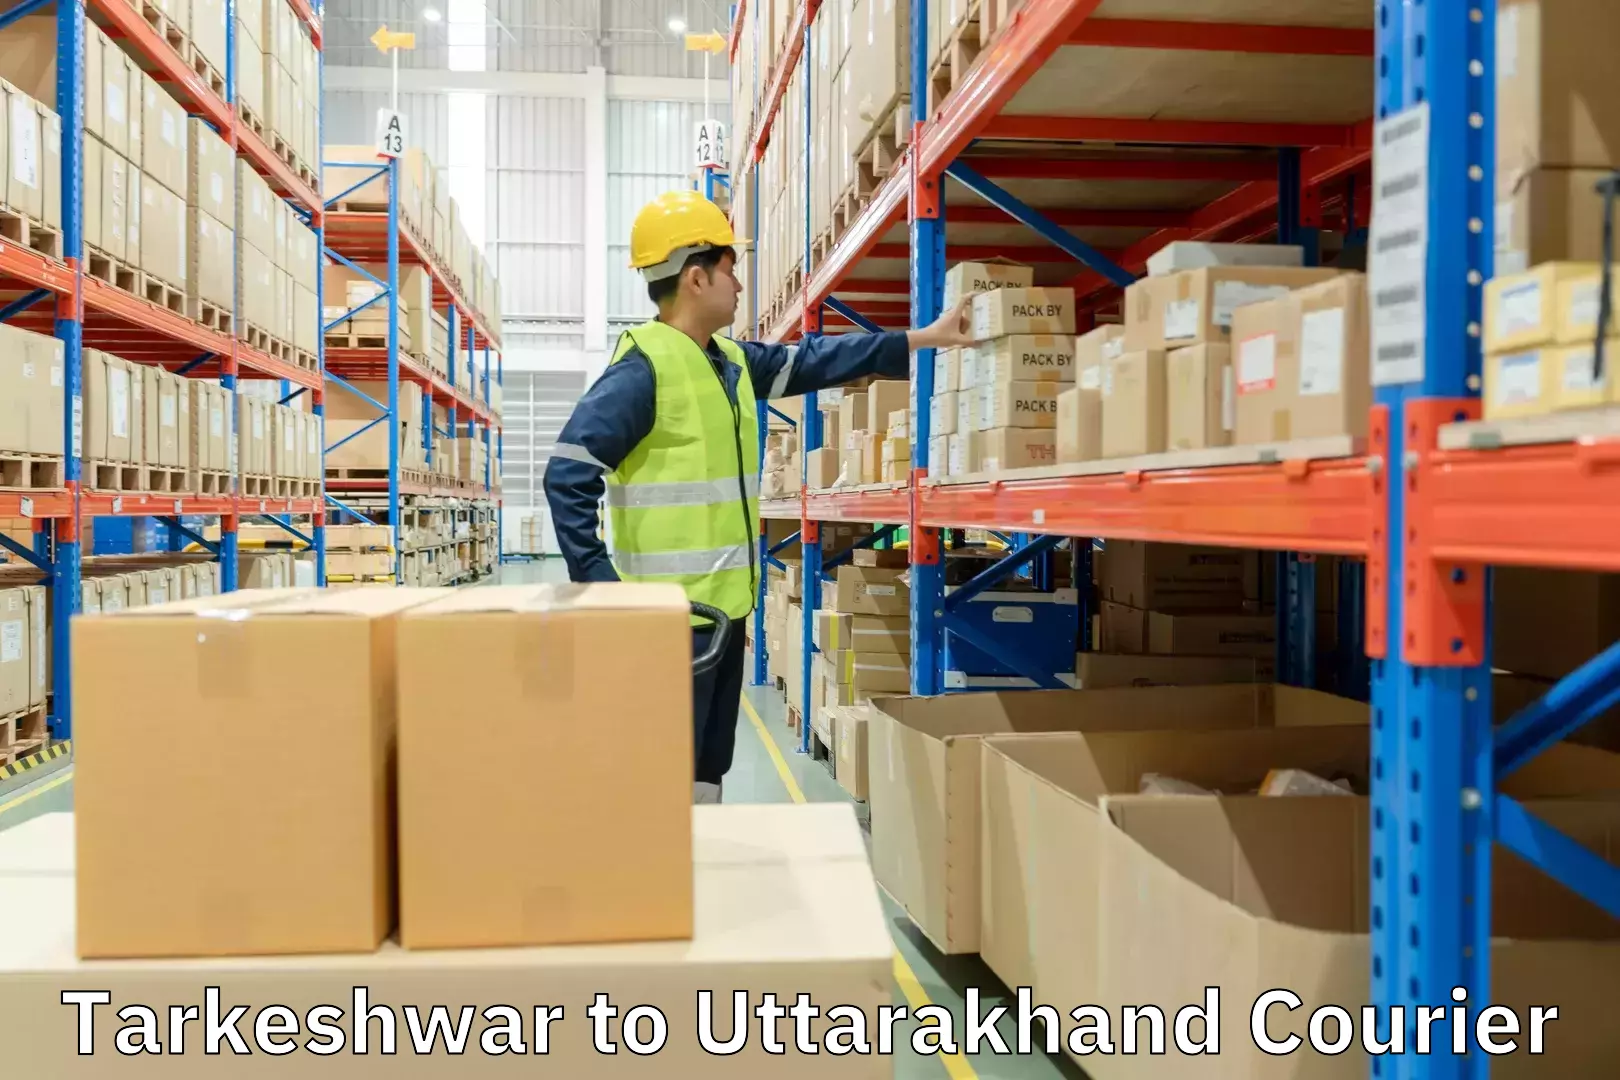 Courier service efficiency Tarkeshwar to Uttarakhand